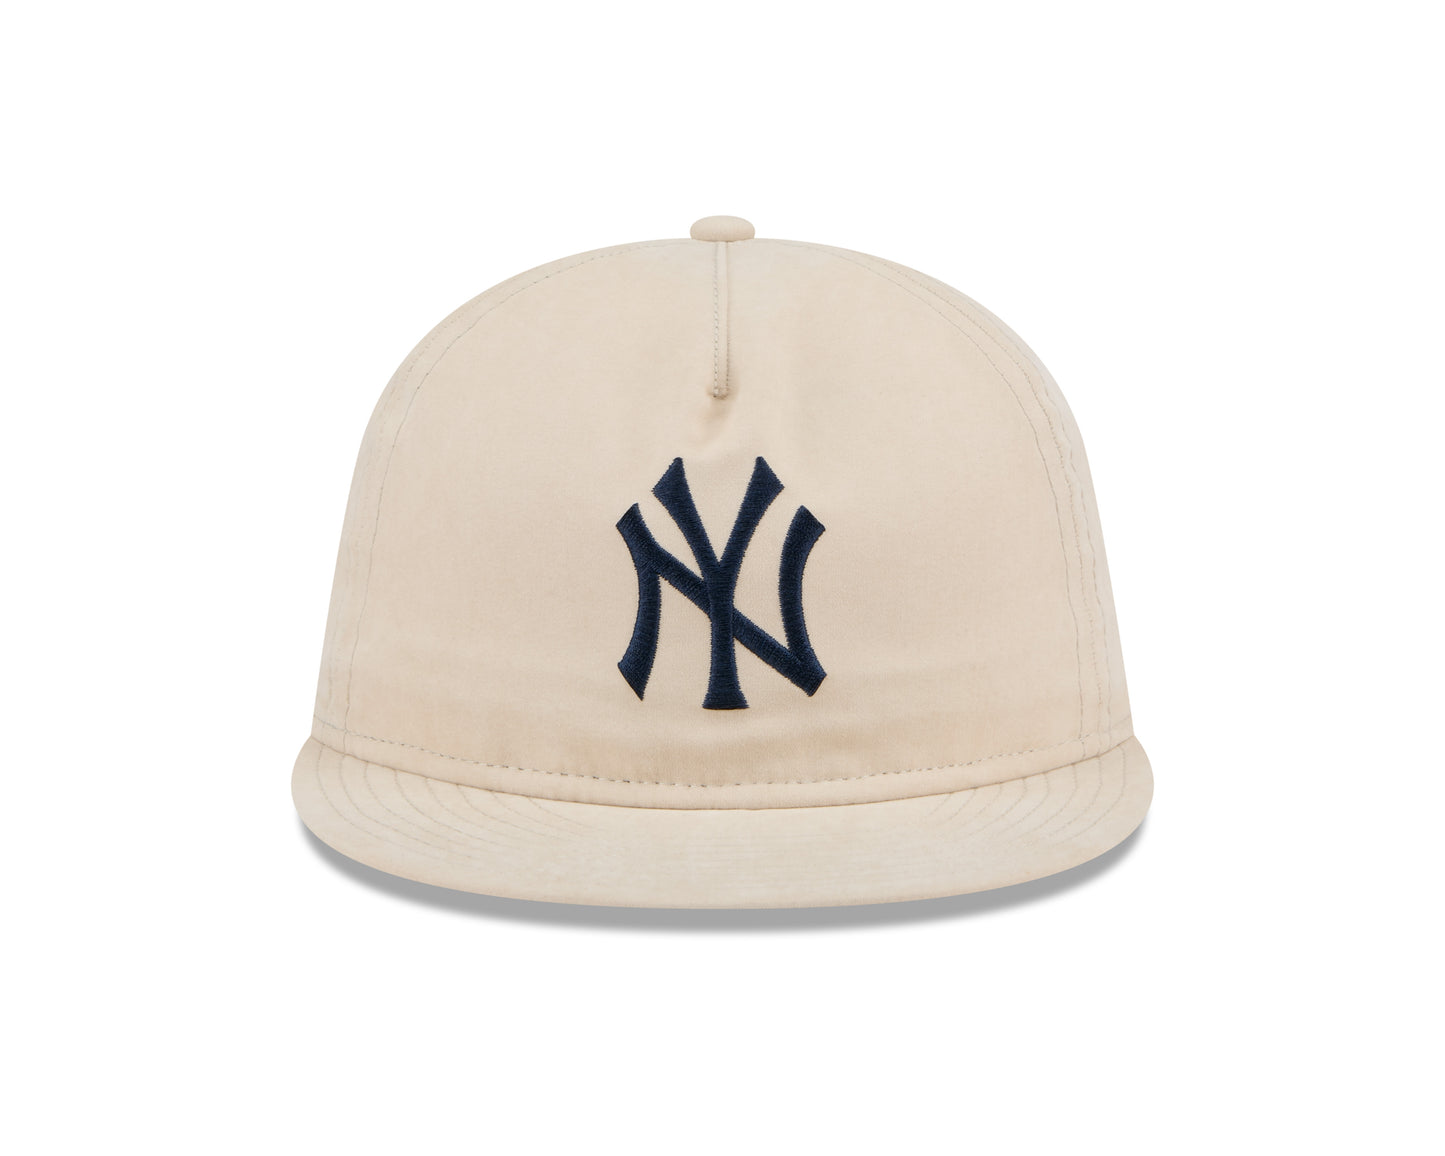 New Era - 9Fifty Retro Crown - Brushed Nylon - New York Yankees - Stone - Headz Up 